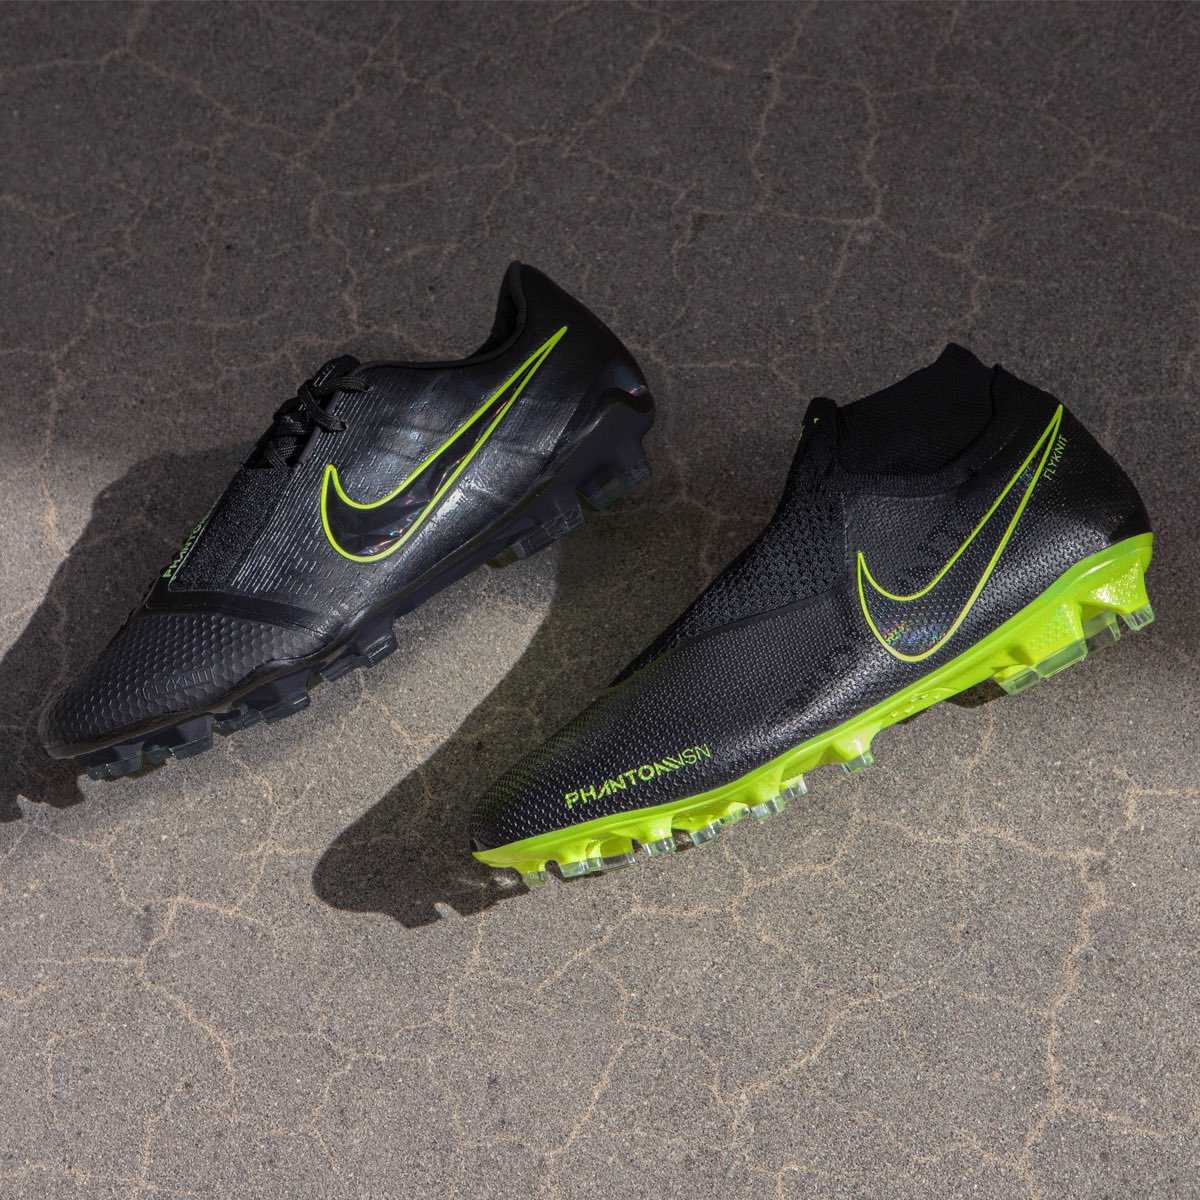 Nike 'Under Radar' 2019 Boots Released - Incl. Next-Gen Tiempo + Mercurials - Footy Headlines